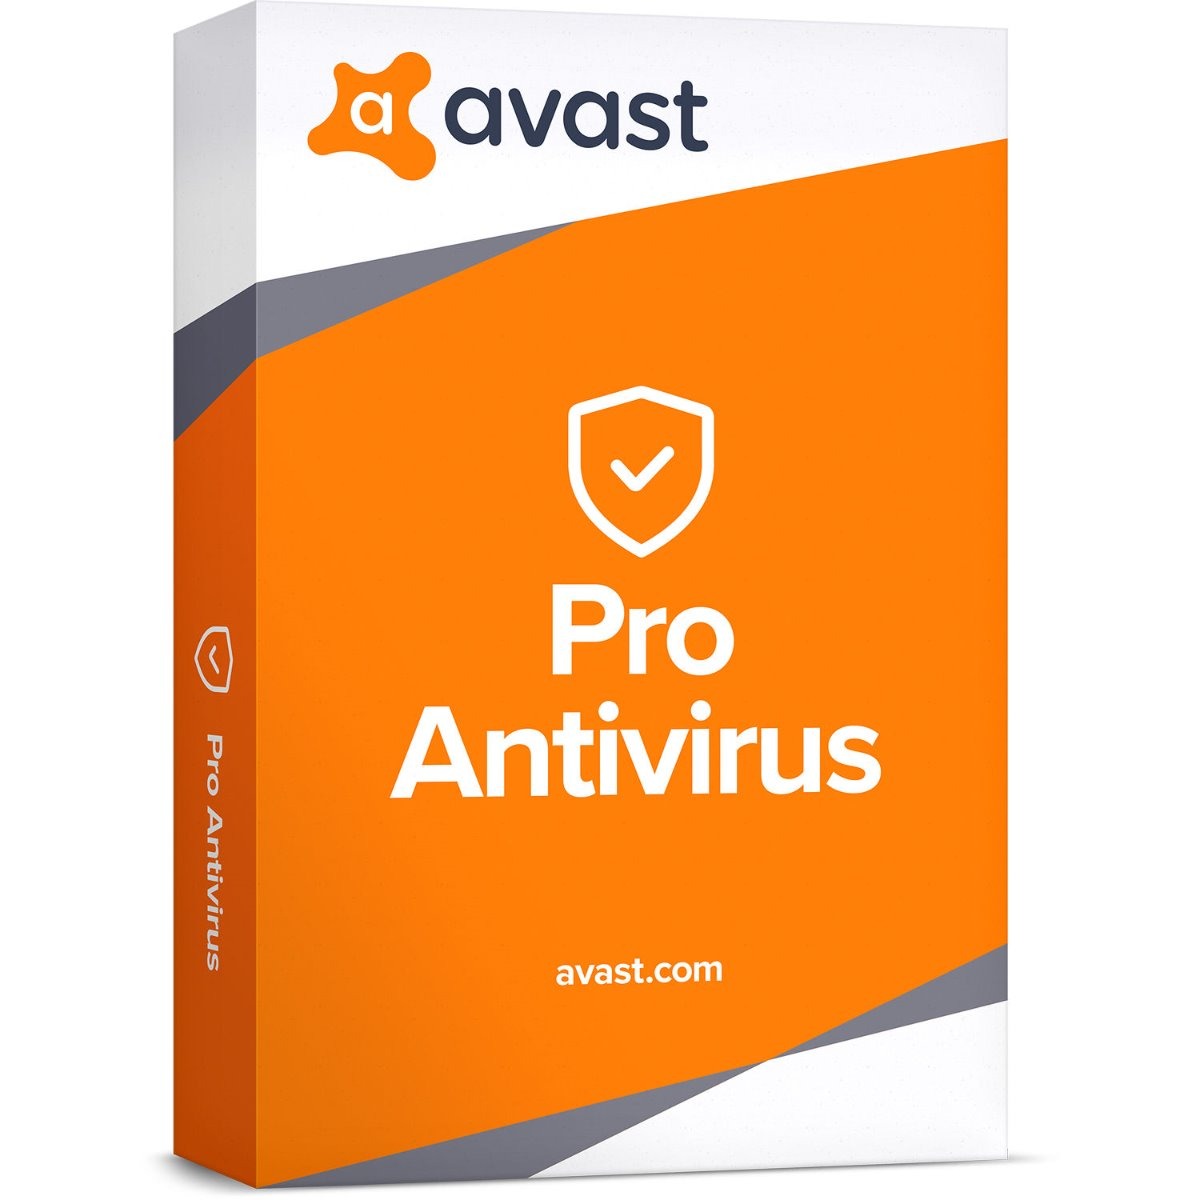 antivirus free software download